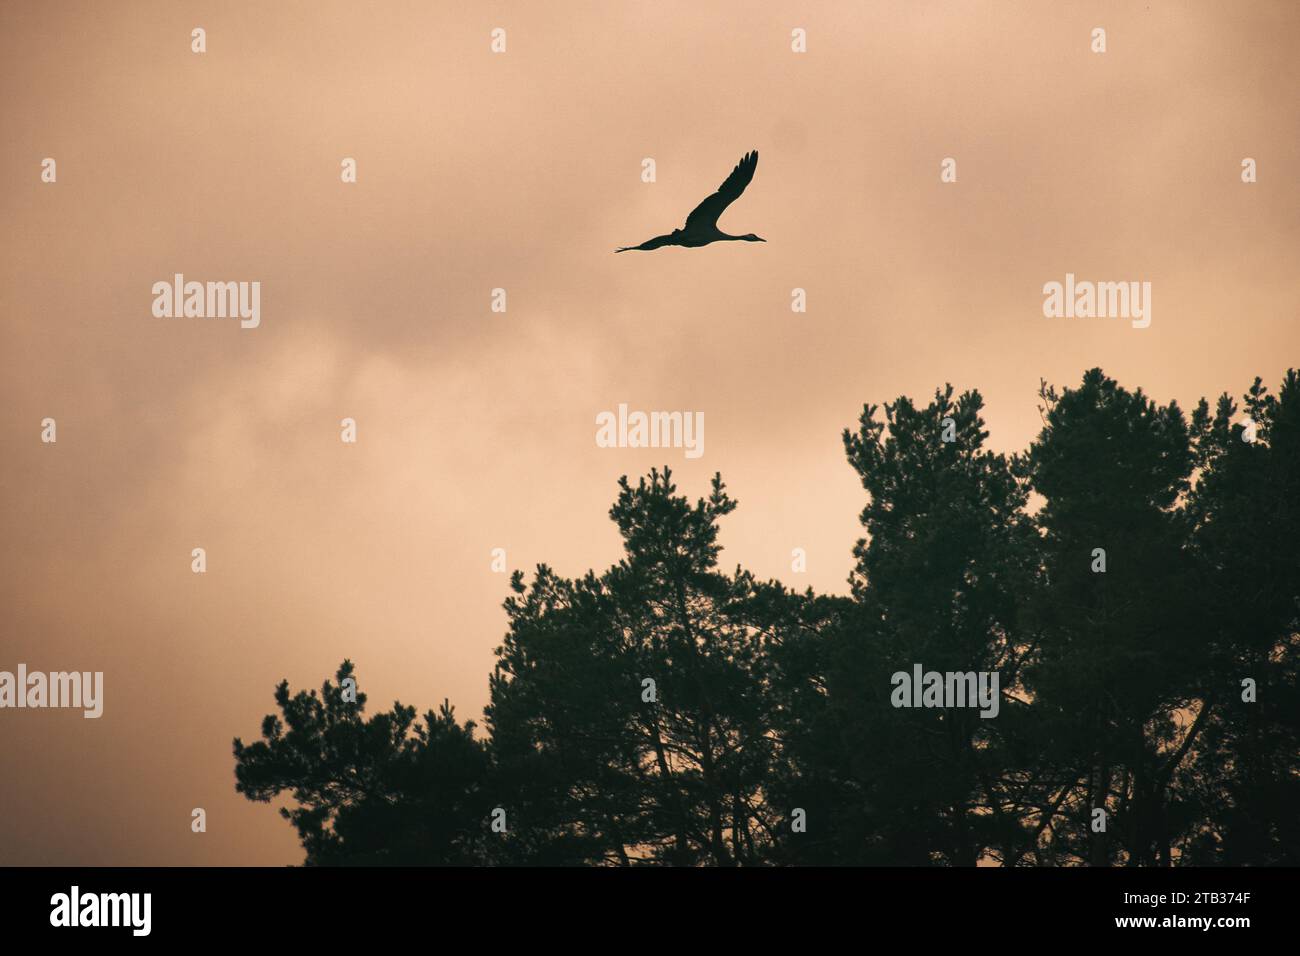 Deux grues survolent des arbres dans une forêt. Oiseaux migrateurs sur le Darss. Photo d'animaux d'oiseaux de la nature à la mer Baltique. Banque D'Images